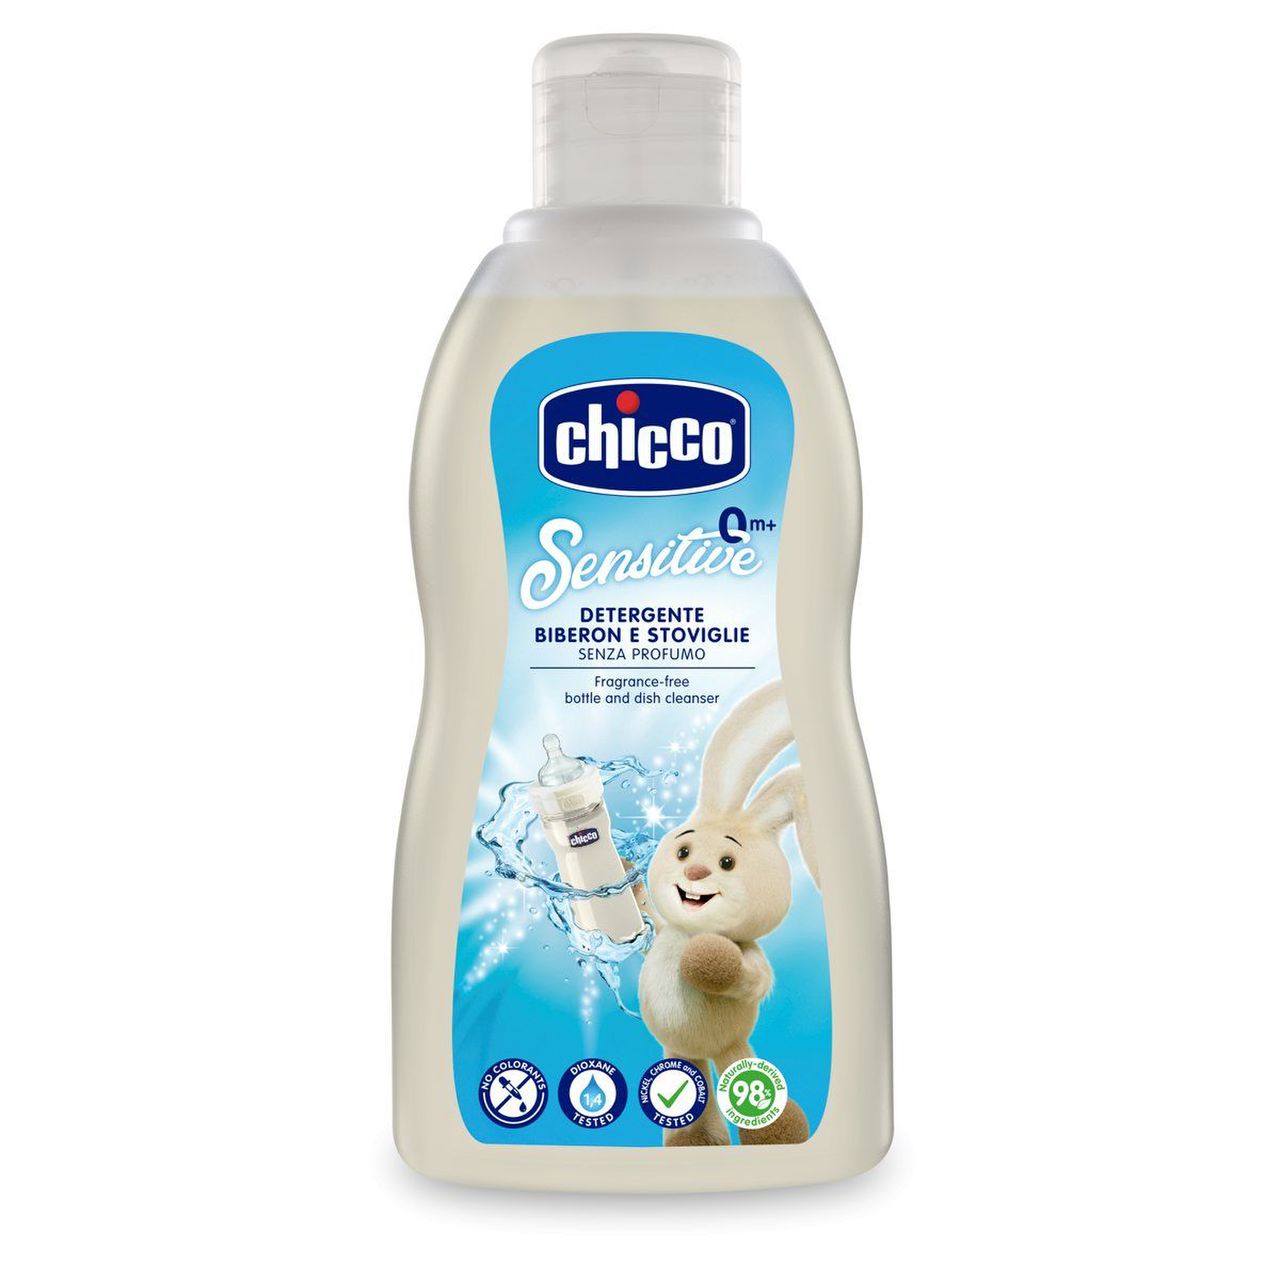 Image of Detergente Biberon E Stoviglie Chicco(R) 300ml